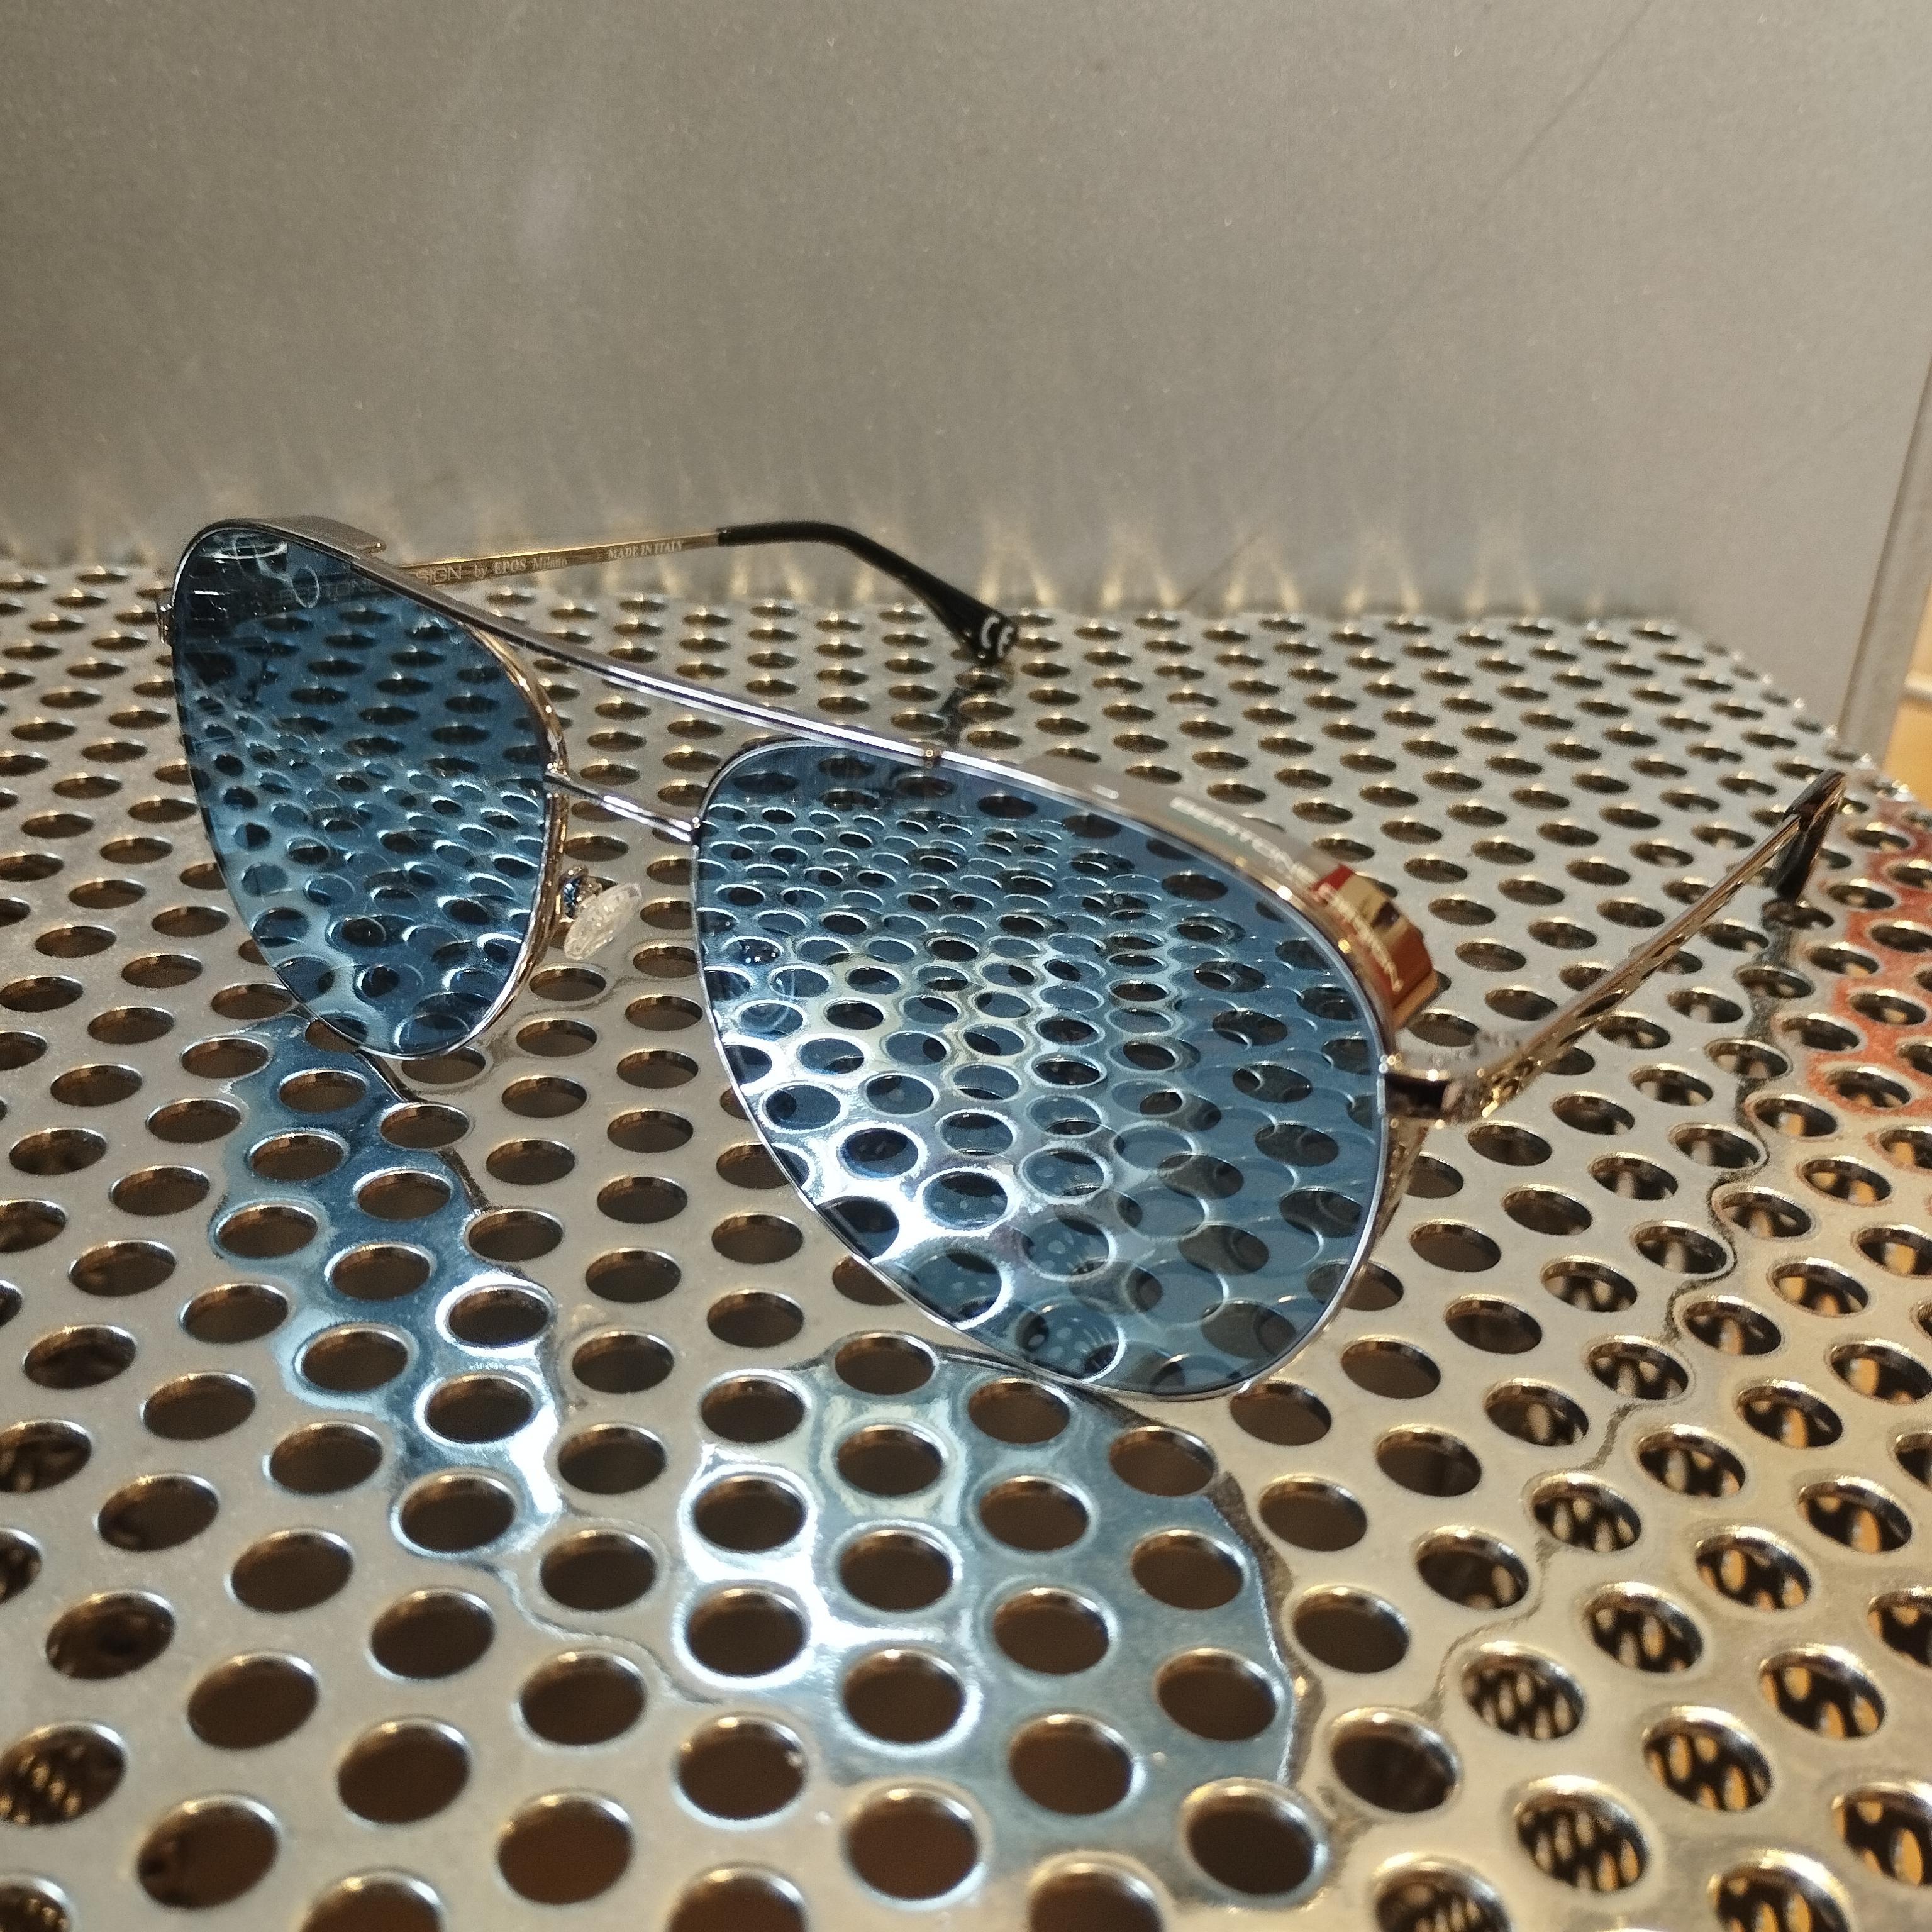 Besonderes und begehrtes Stück, handwerklich in Italien hergestellt
Bertone Design von Epos Milano
Stratos Zero SL
Limitierte Sonnenbrille aus dem Besitz derselben Person und sehr selten benutzt
Azurblaue Linsen
Rahmenbreite cm 13 (5,11 Zoll)
Kommt